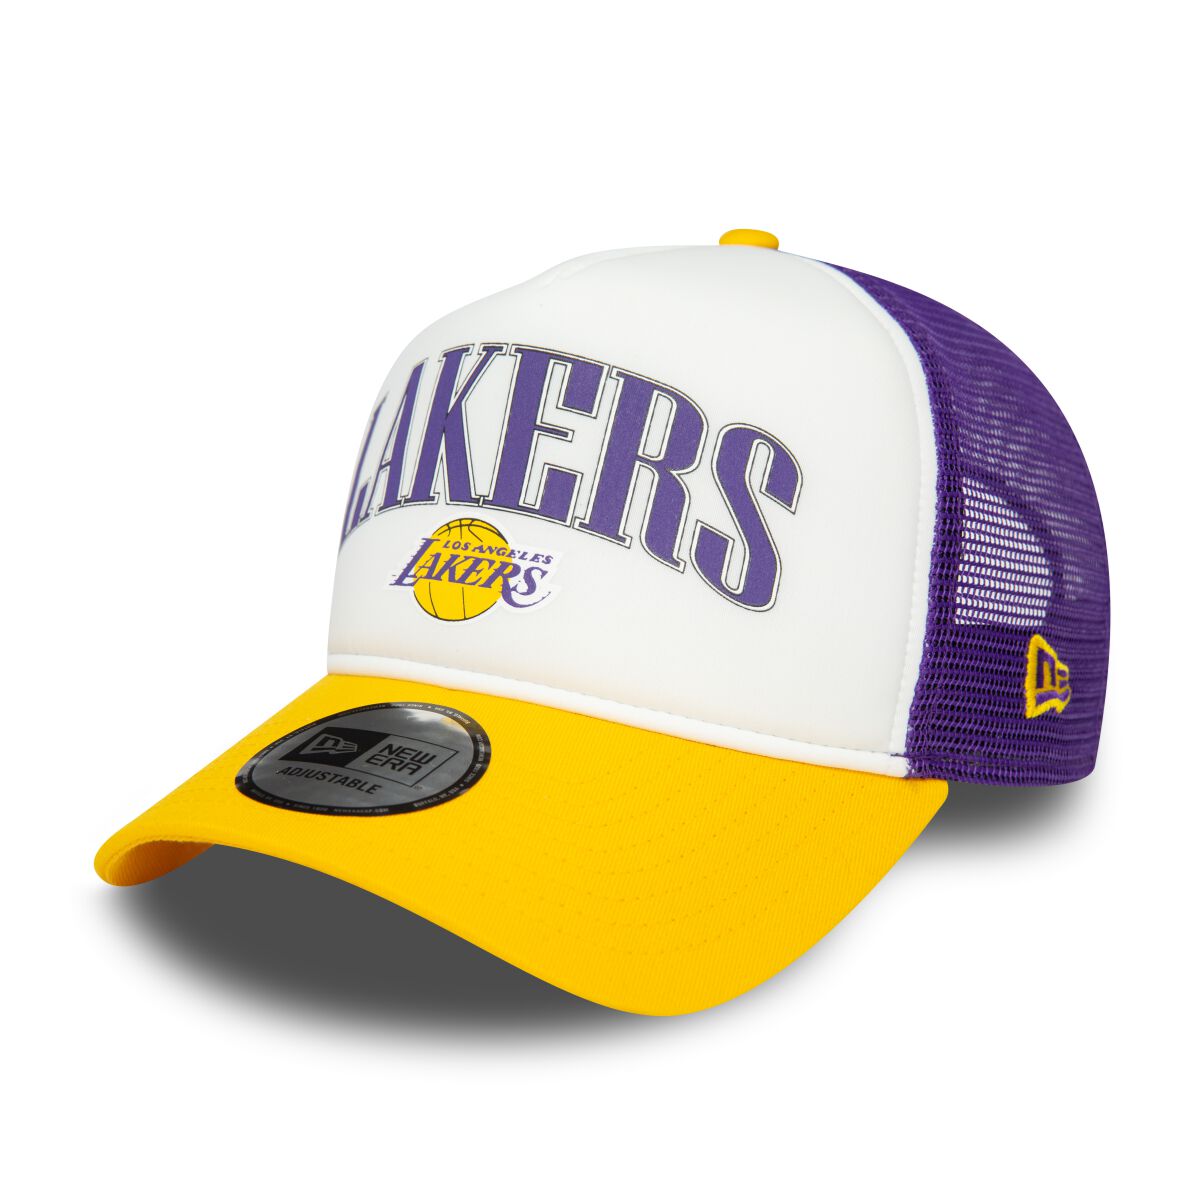 New Era - NBA - Retro Trucker 9FORTY - LA Lakers - Cap - multicolor